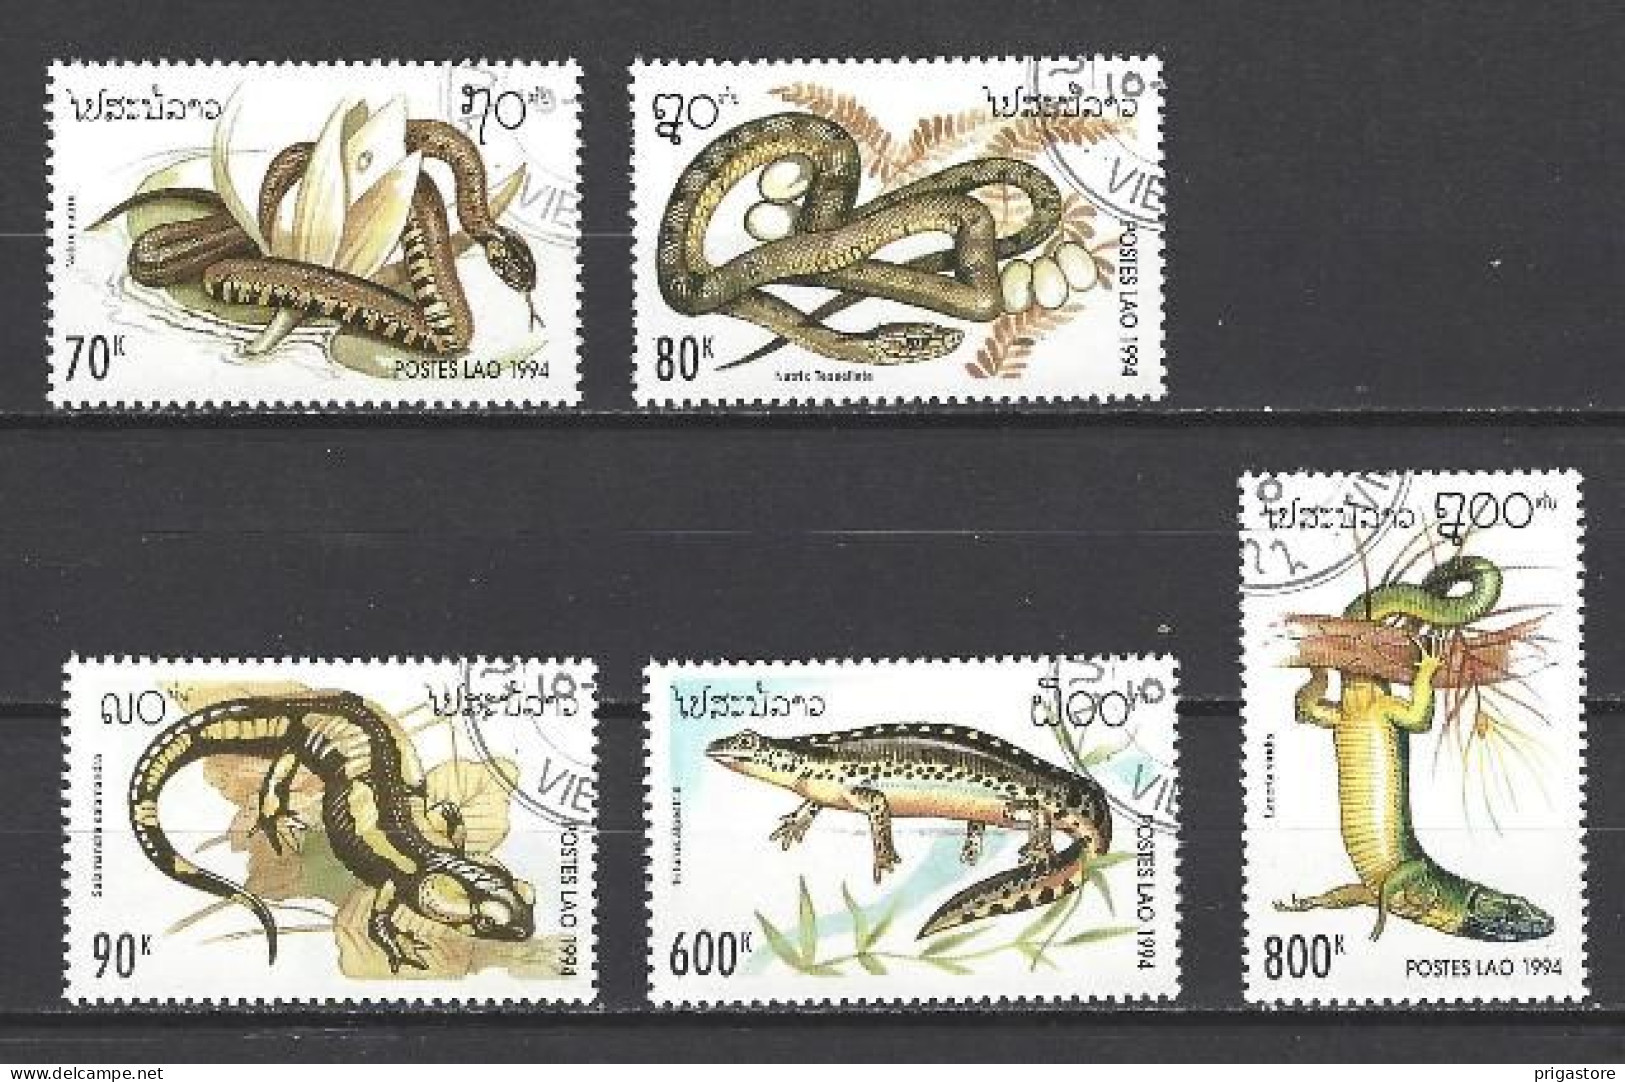 Animaux Reptiles Laos 1994 (124) Yvert N° 1134 à 1138 Oblitérés Used - Slangen